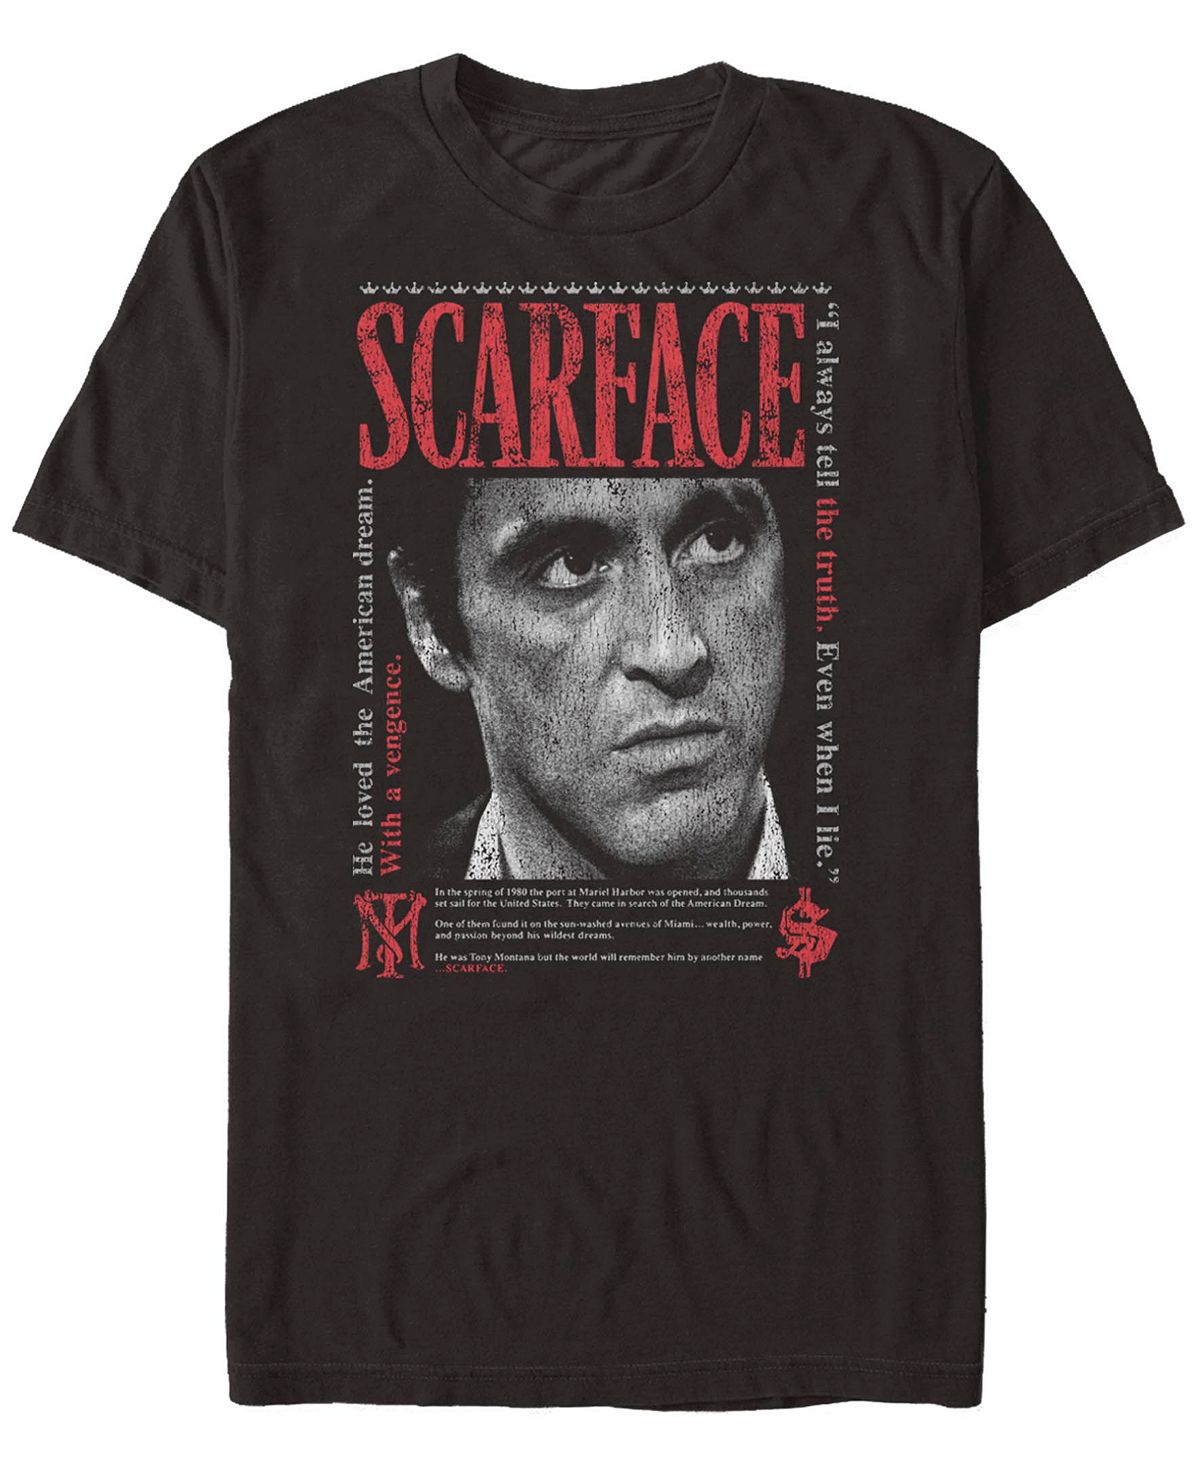 Мужская футболка Scarface Stare Down с короткими рукавами Fifth Sun